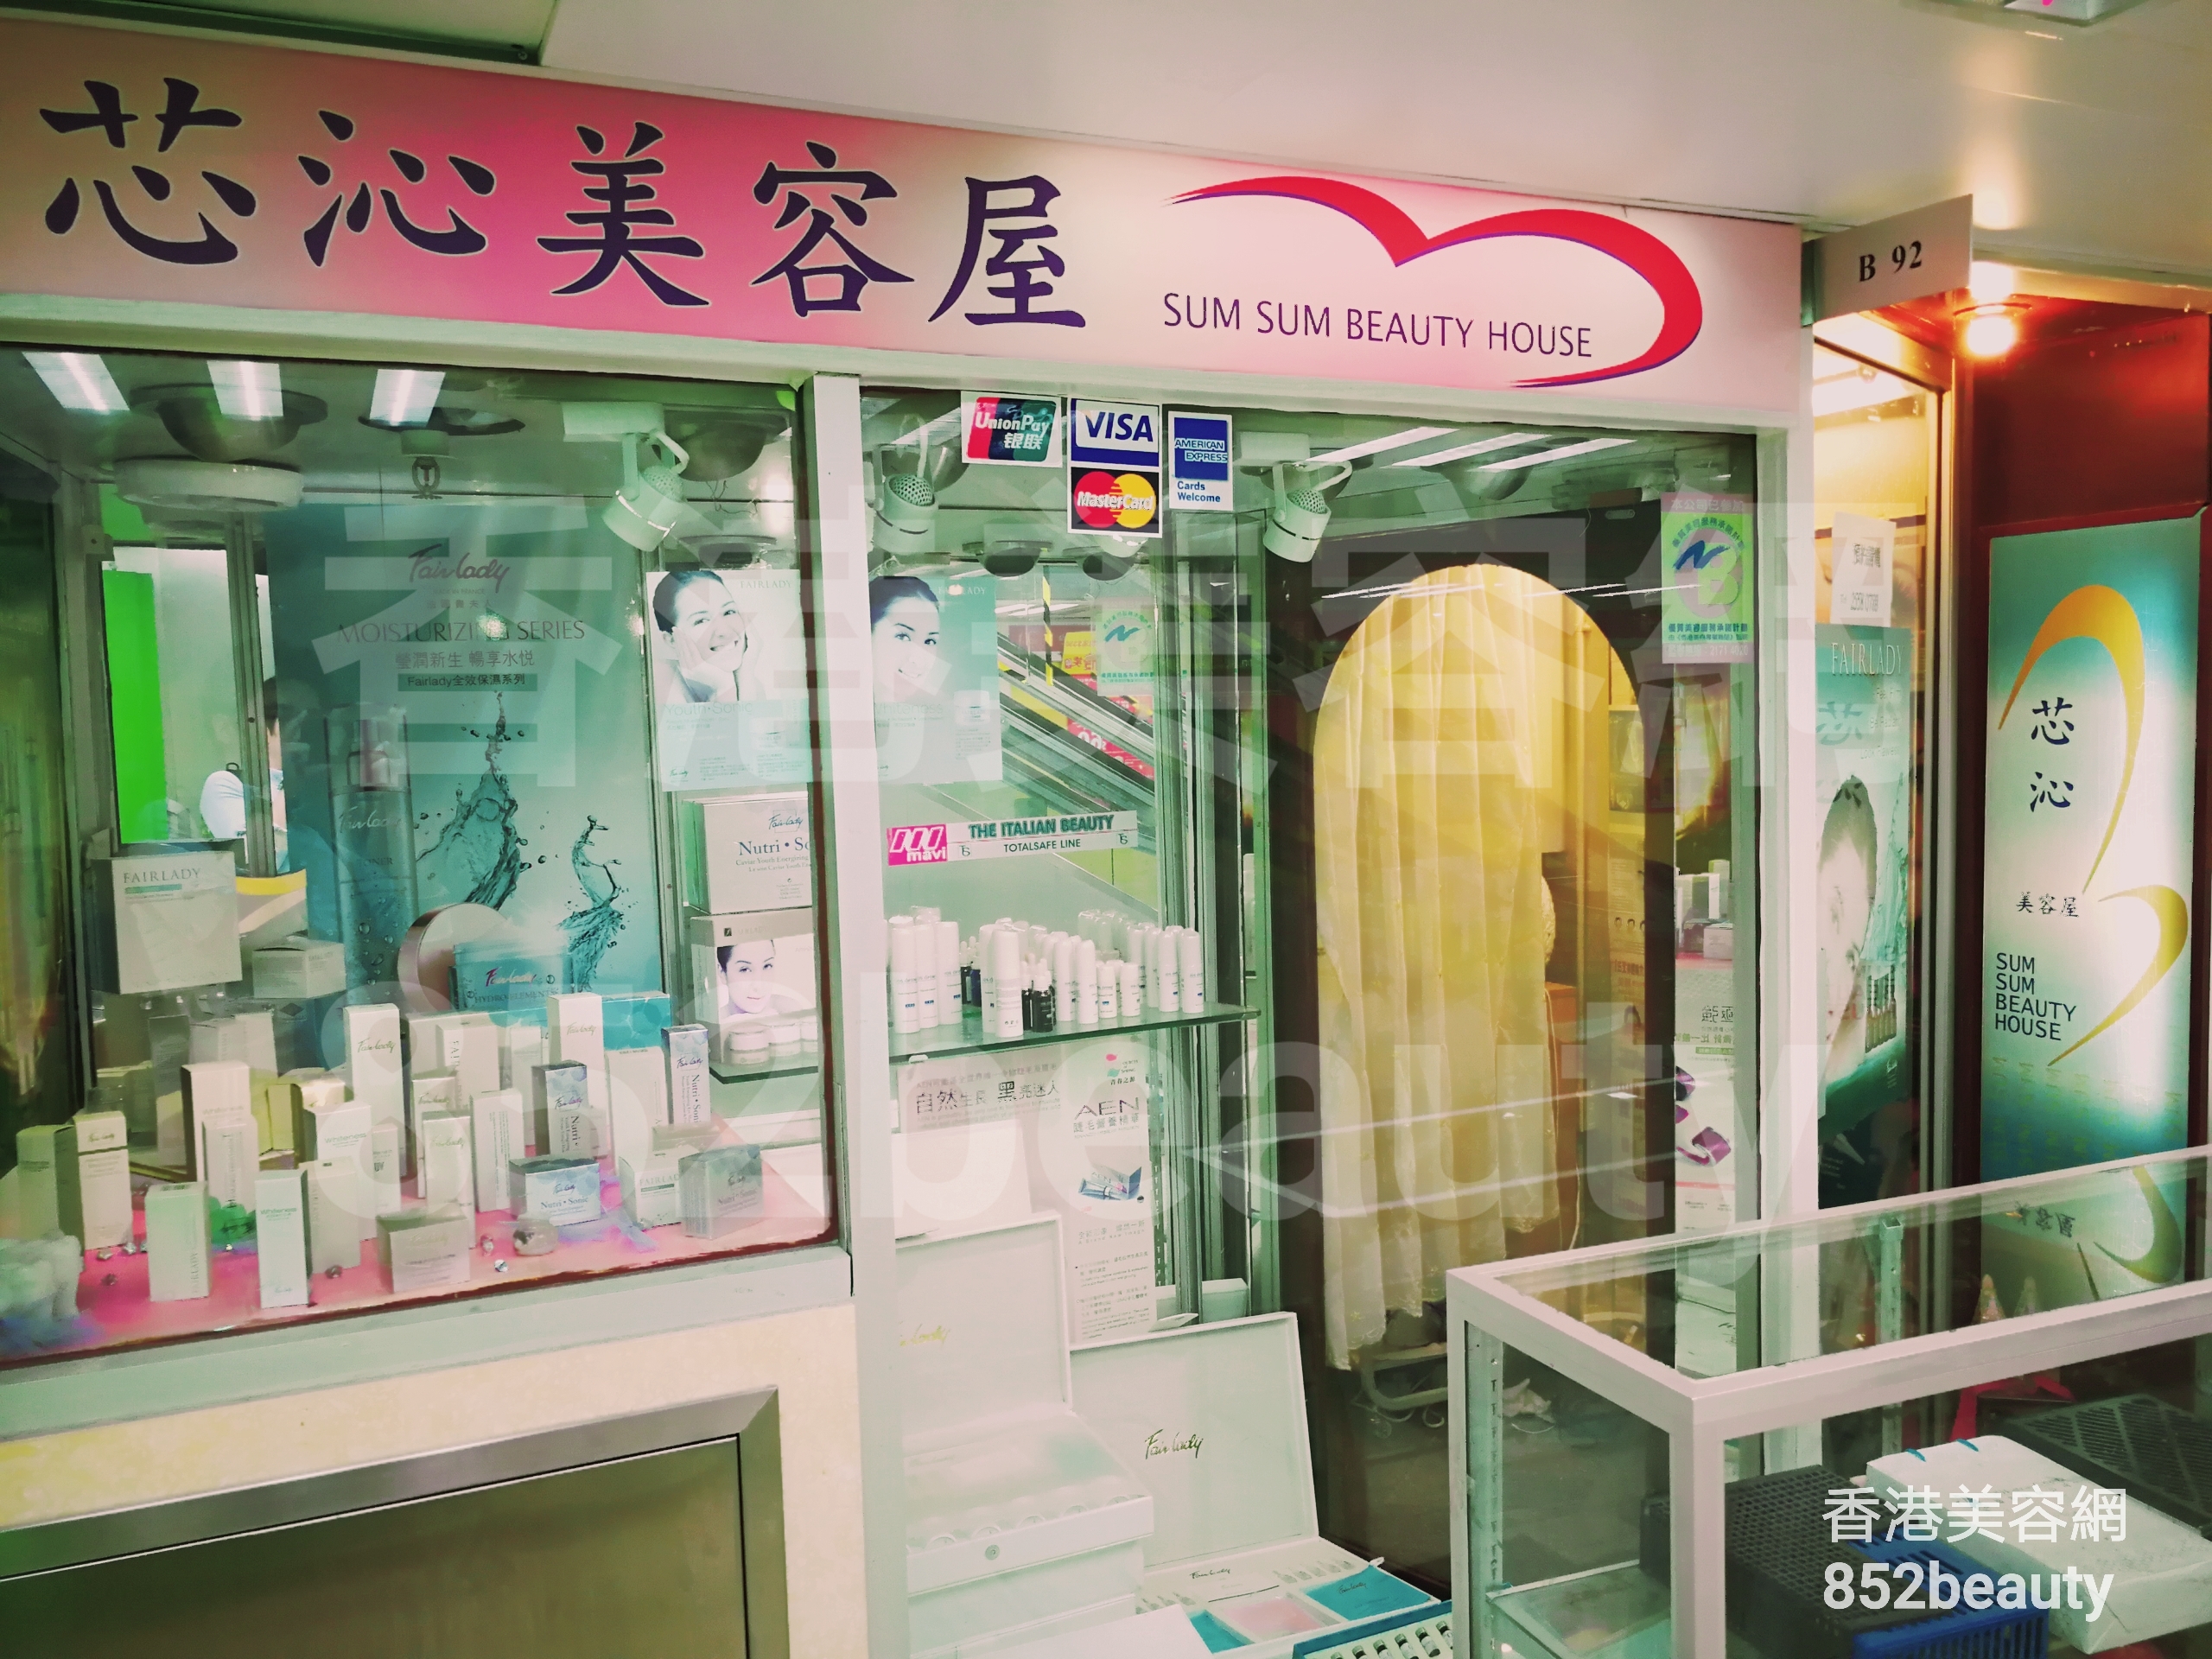 香港美容網 Hong Kong Beauty Salon 美容院 / 美容師: 芯沁美容屋